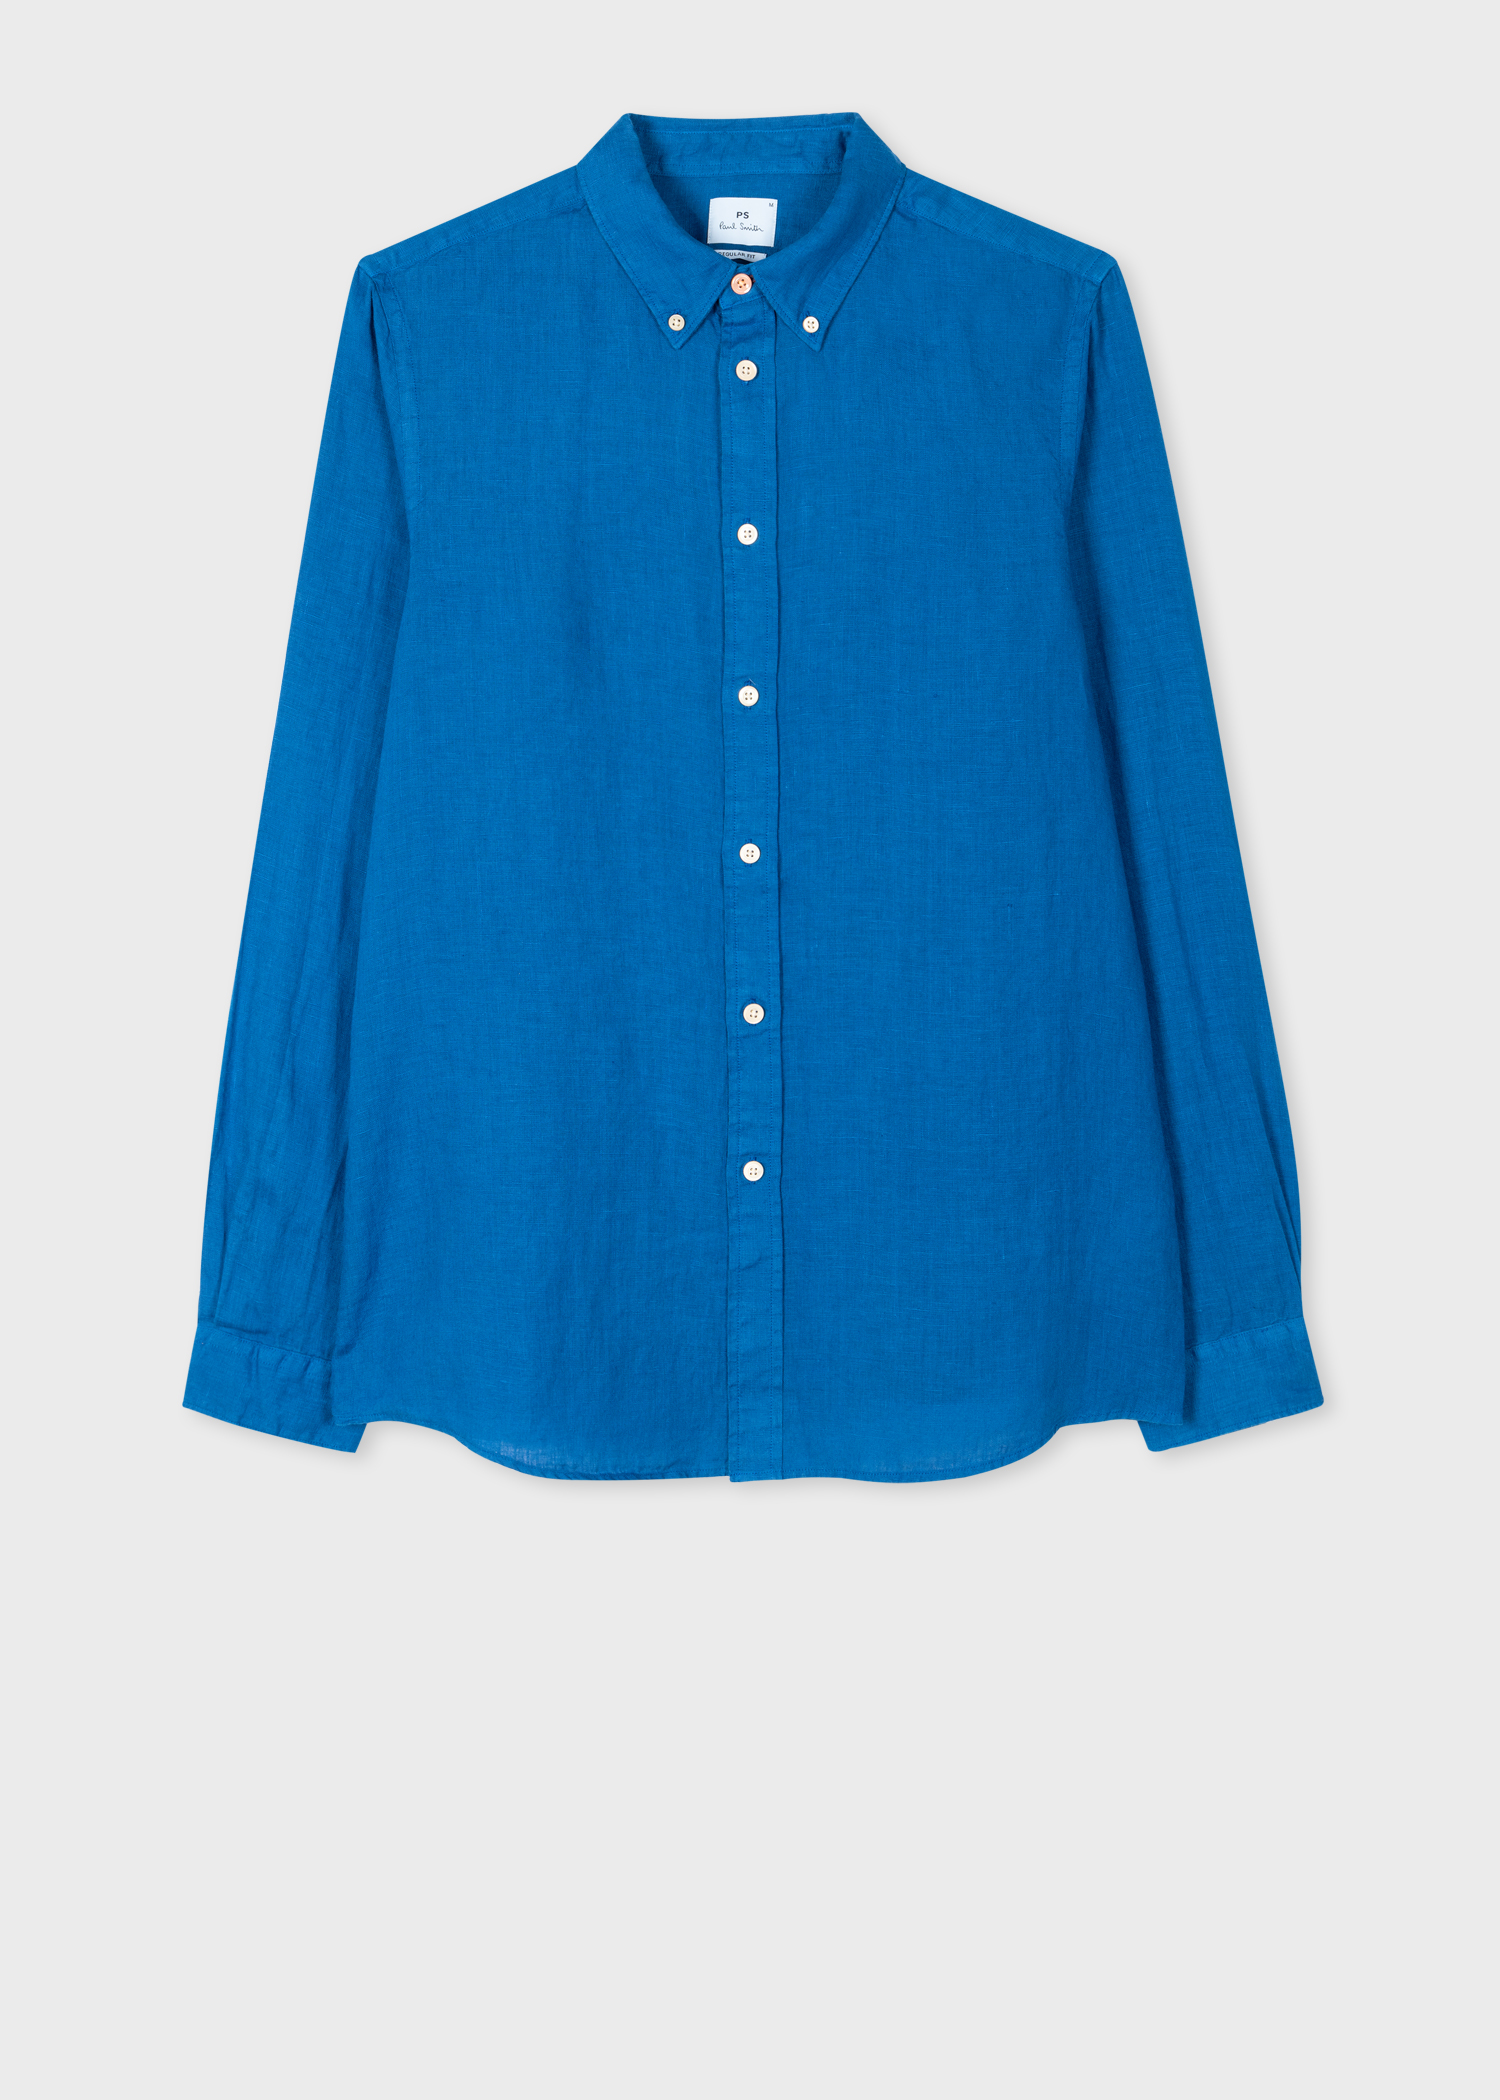 Men's Cobalt Blue Linen Button-Down Shirt